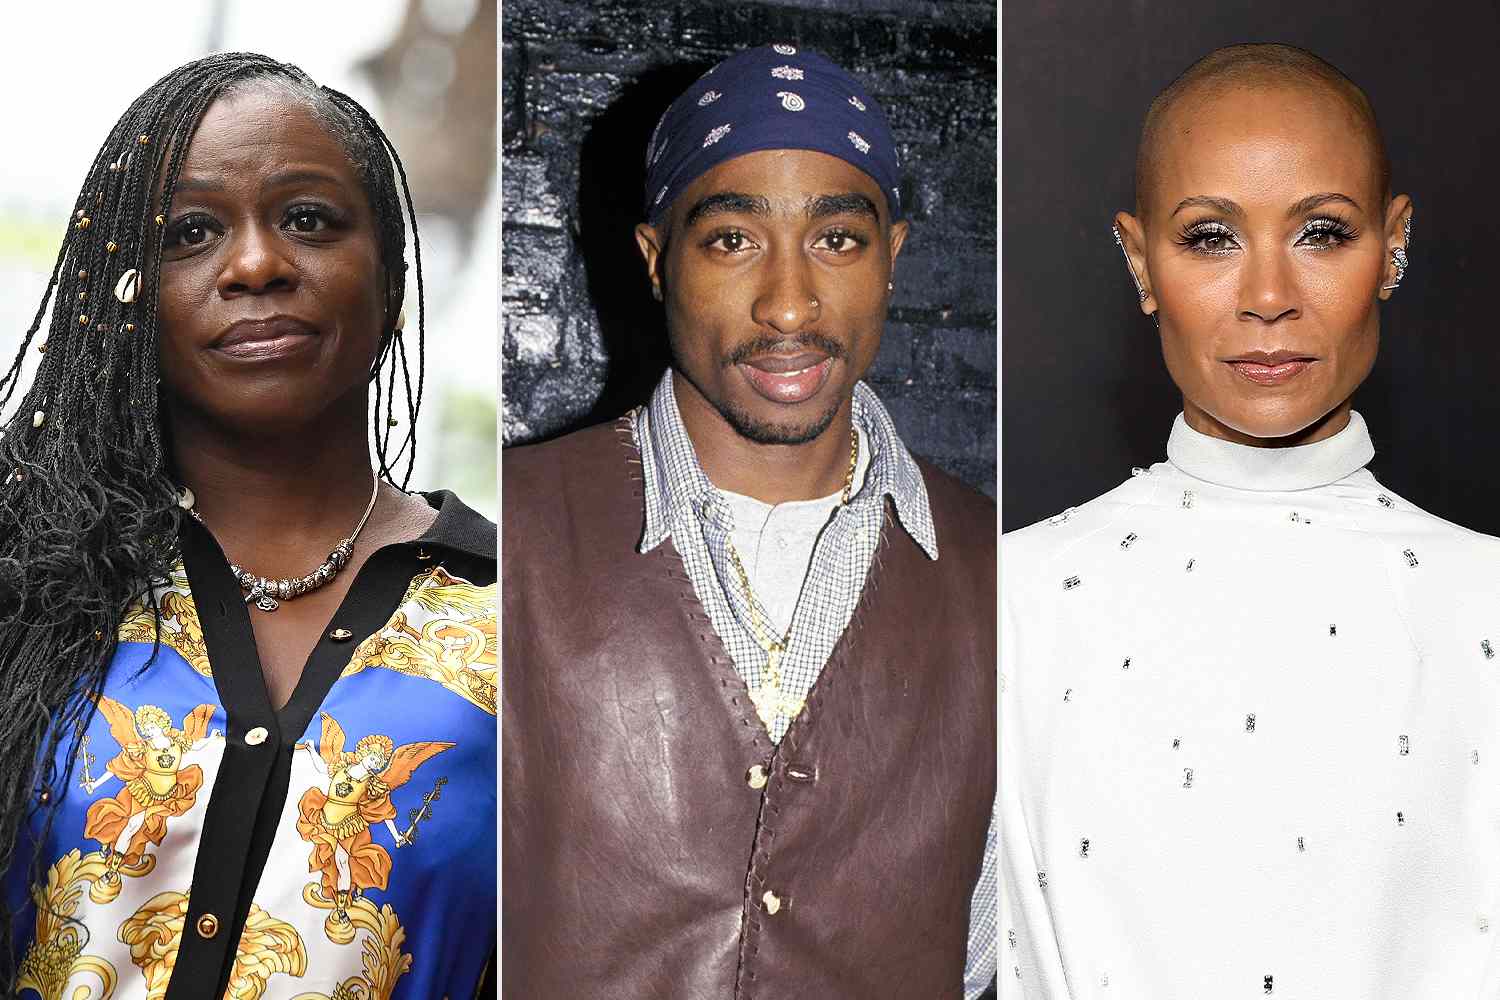 Tupac Shakur’s sister, Jada Pinkett Smith react to suspect arrest